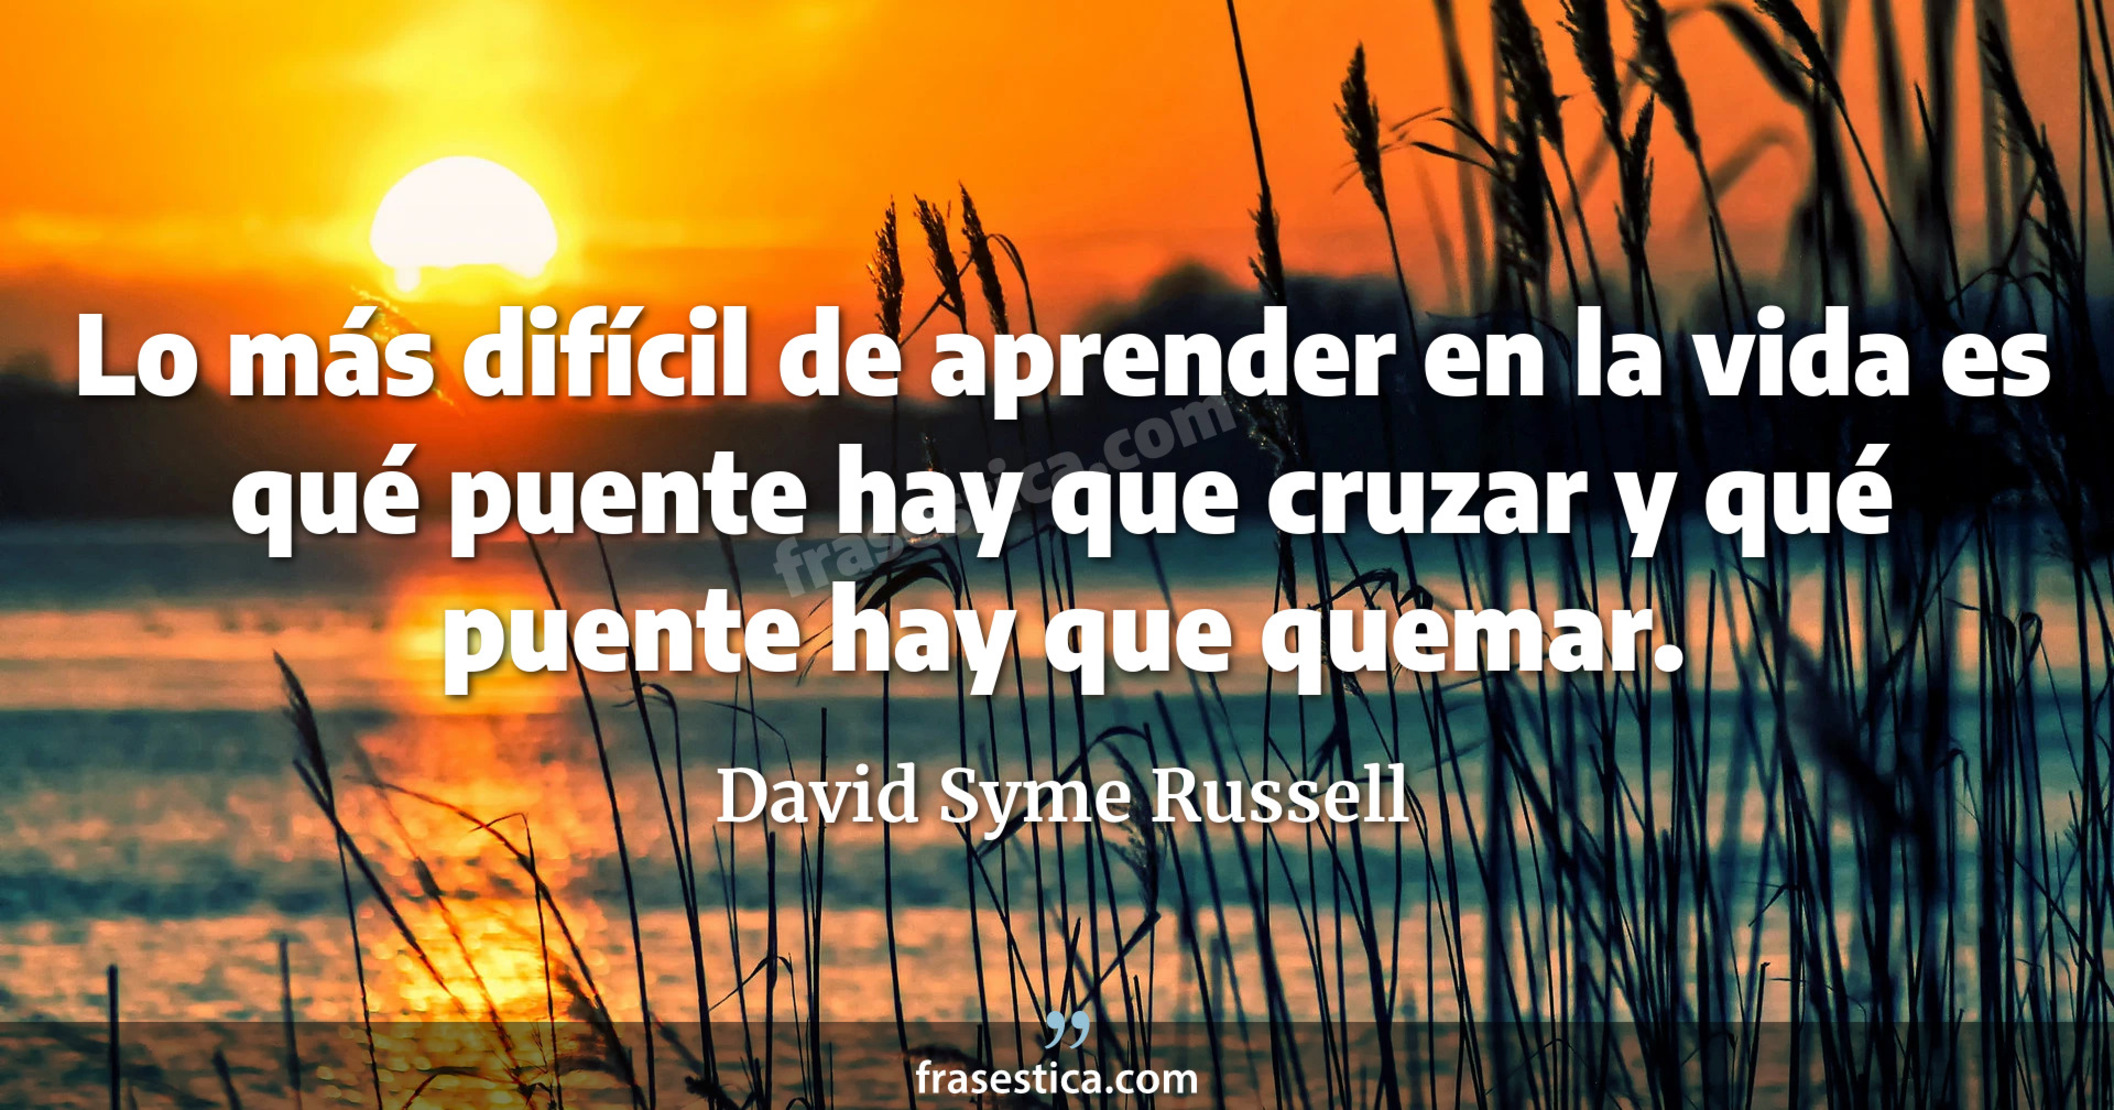 Lo más difícil de aprender en la vida es qué puente hay que cruzar y qué puente hay que quemar. - David Syme Russell